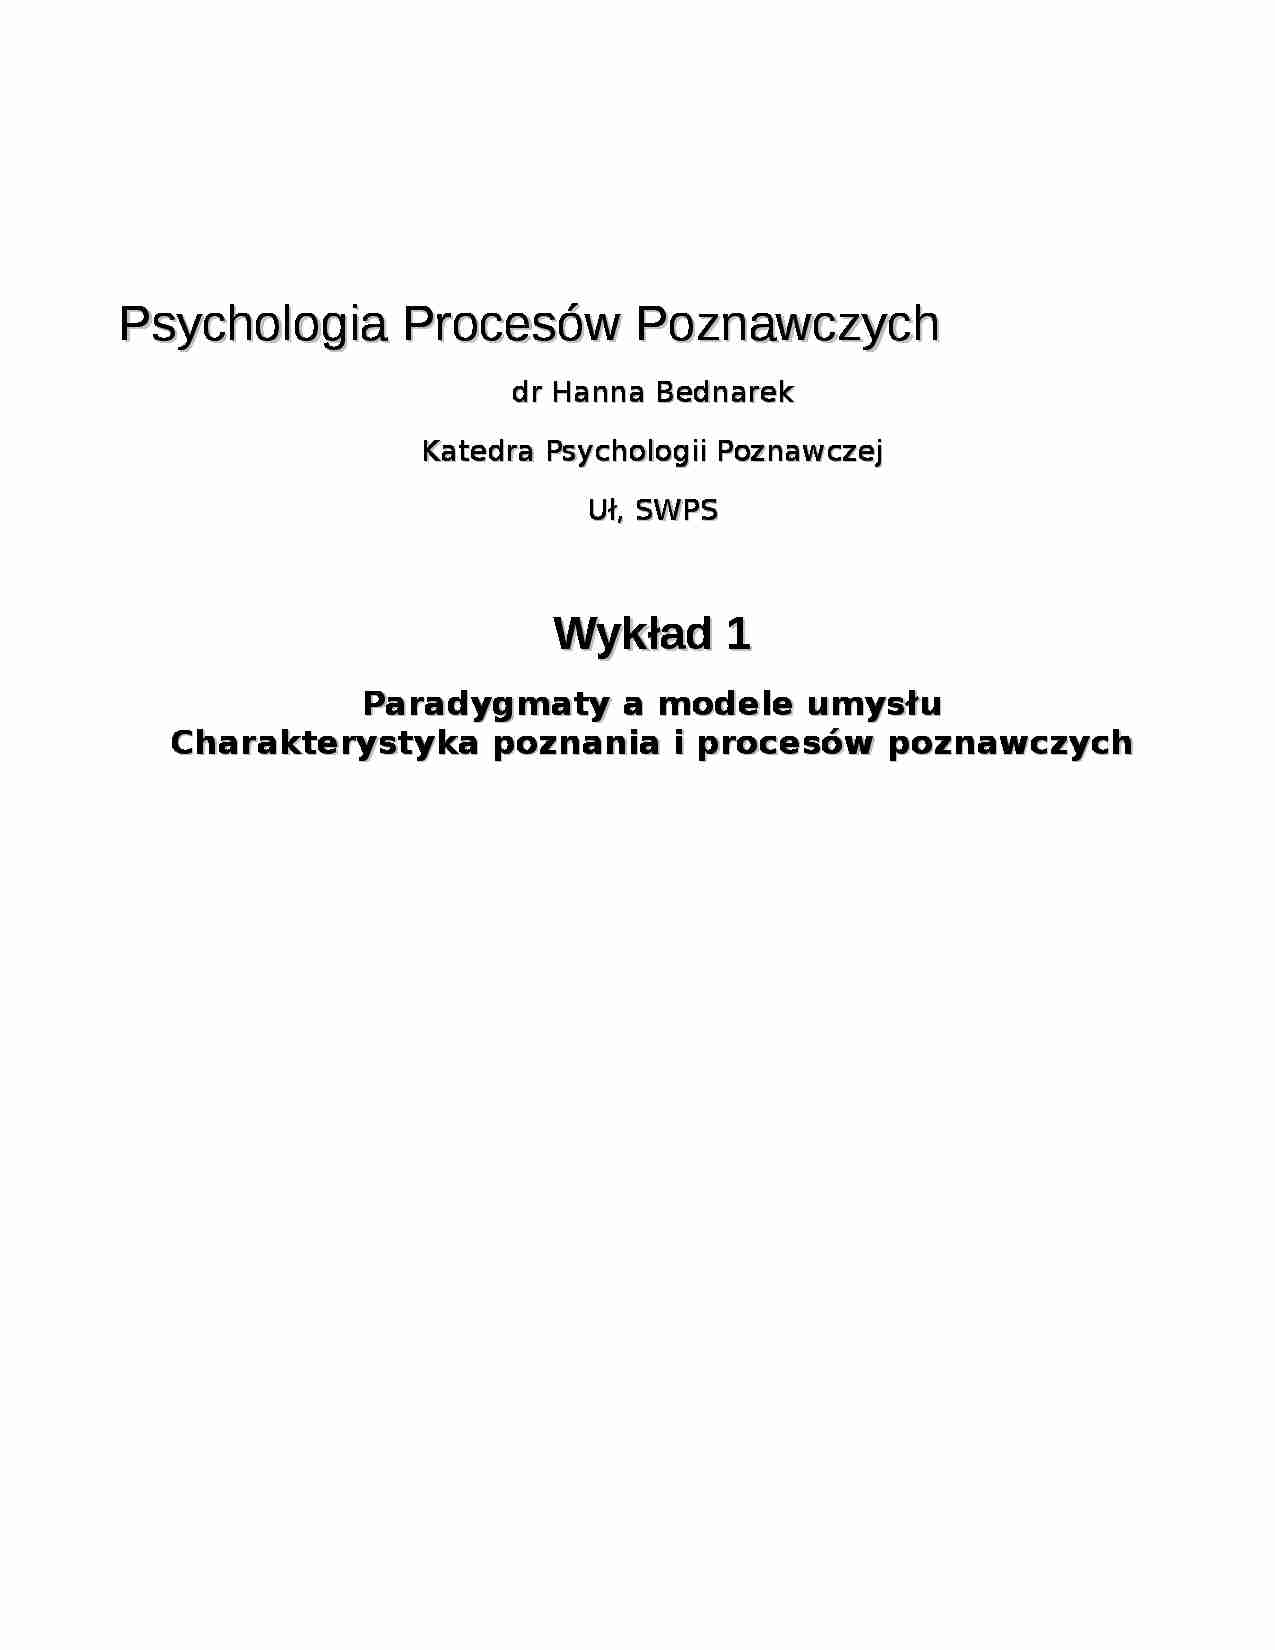 Psychologia Procesów Poznawczych-skrypt - strona 1